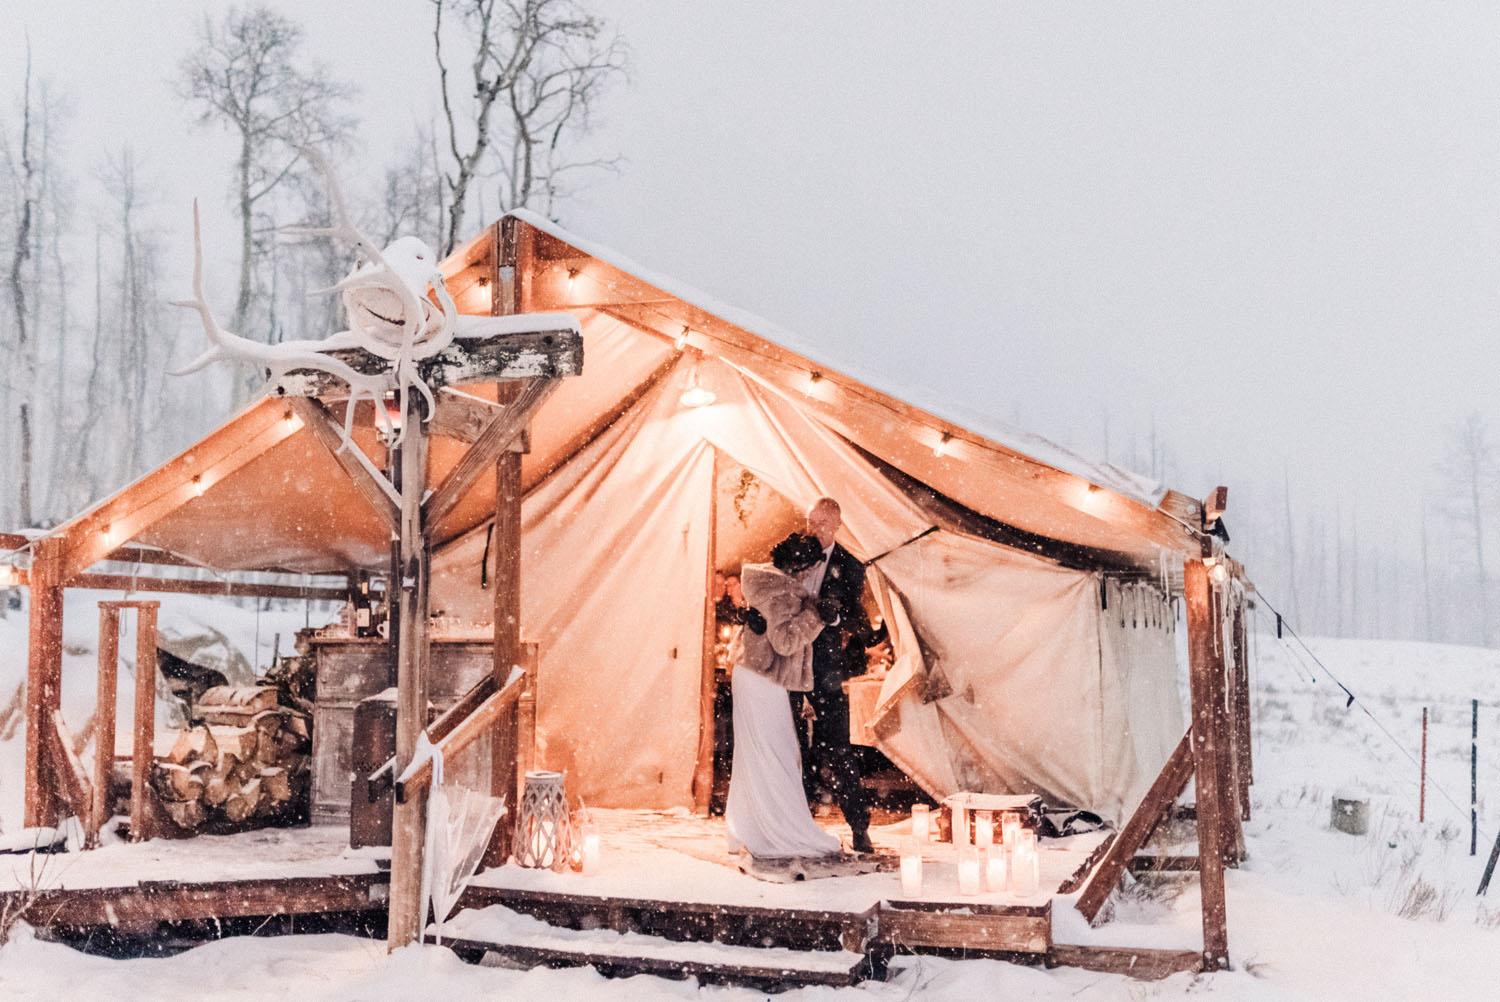 Colorado Wedding in a Blizzard